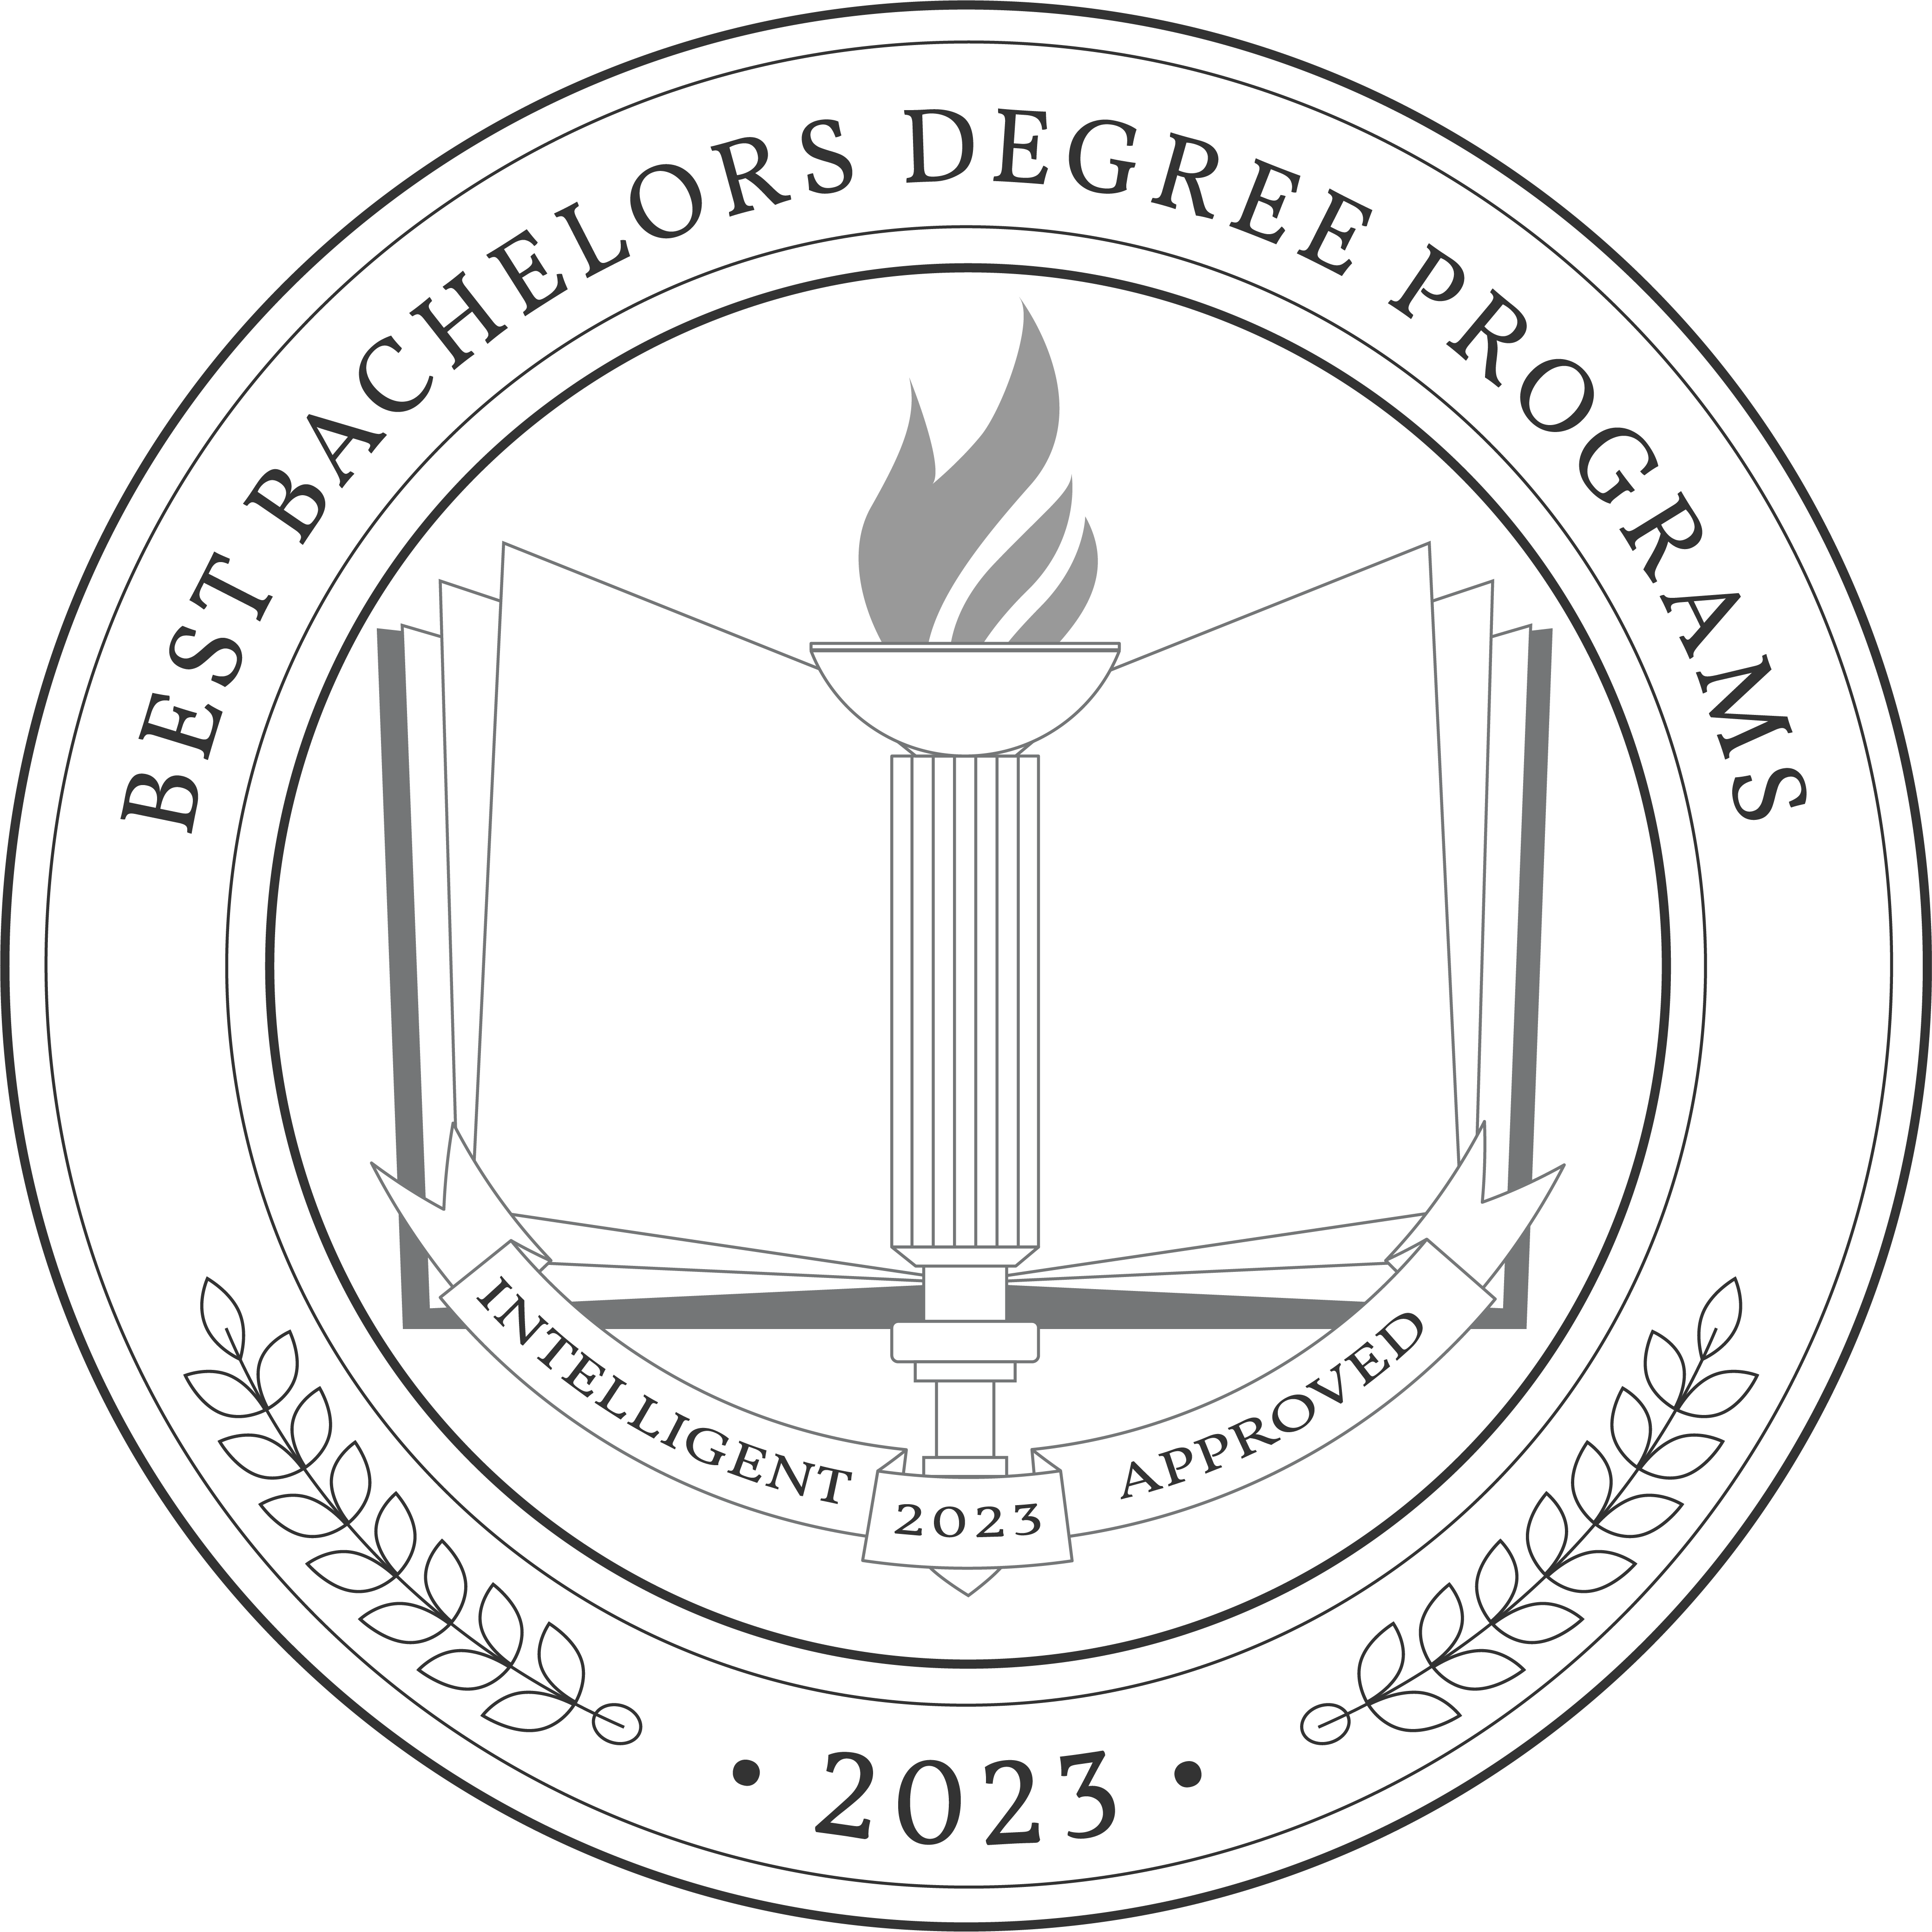 Best Bachelors Degree Programs 2023